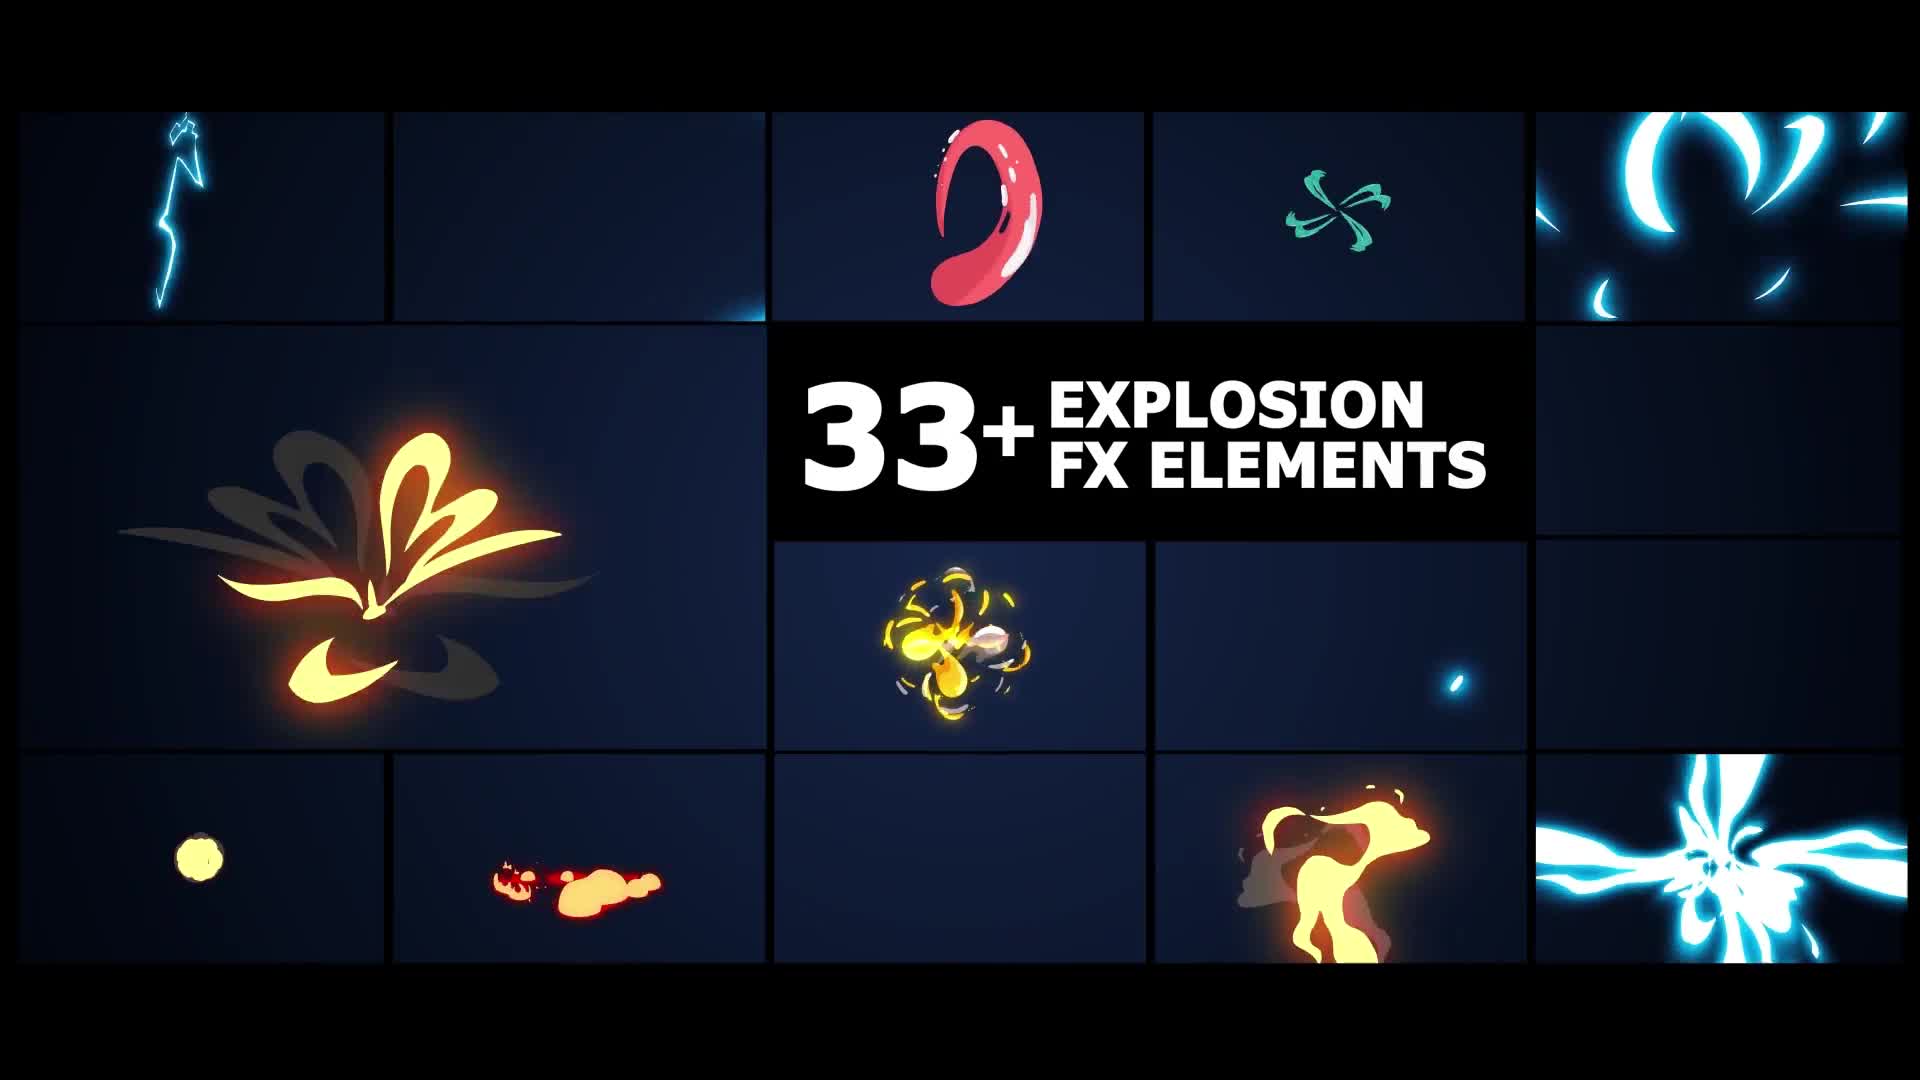 Flash FX Elements Pack 02 | Premiere Pro MOGRT Videohive 39144036 Premiere Pro Image 1